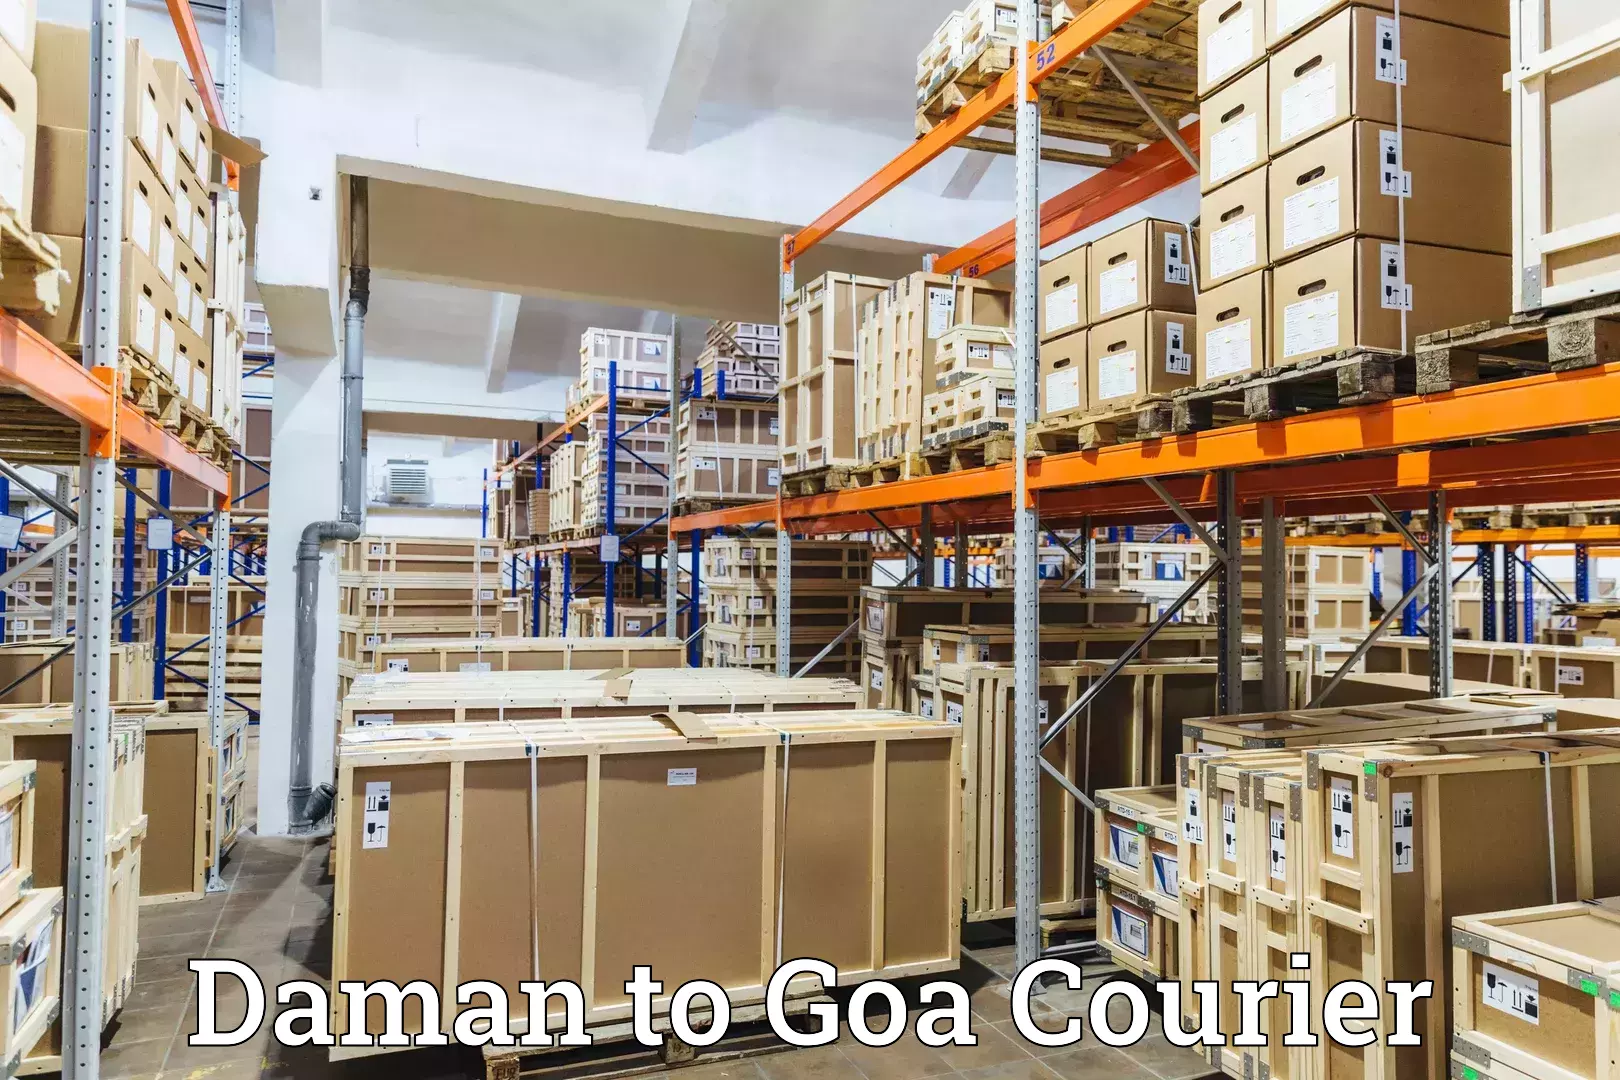 24-hour courier services Daman to Ponda